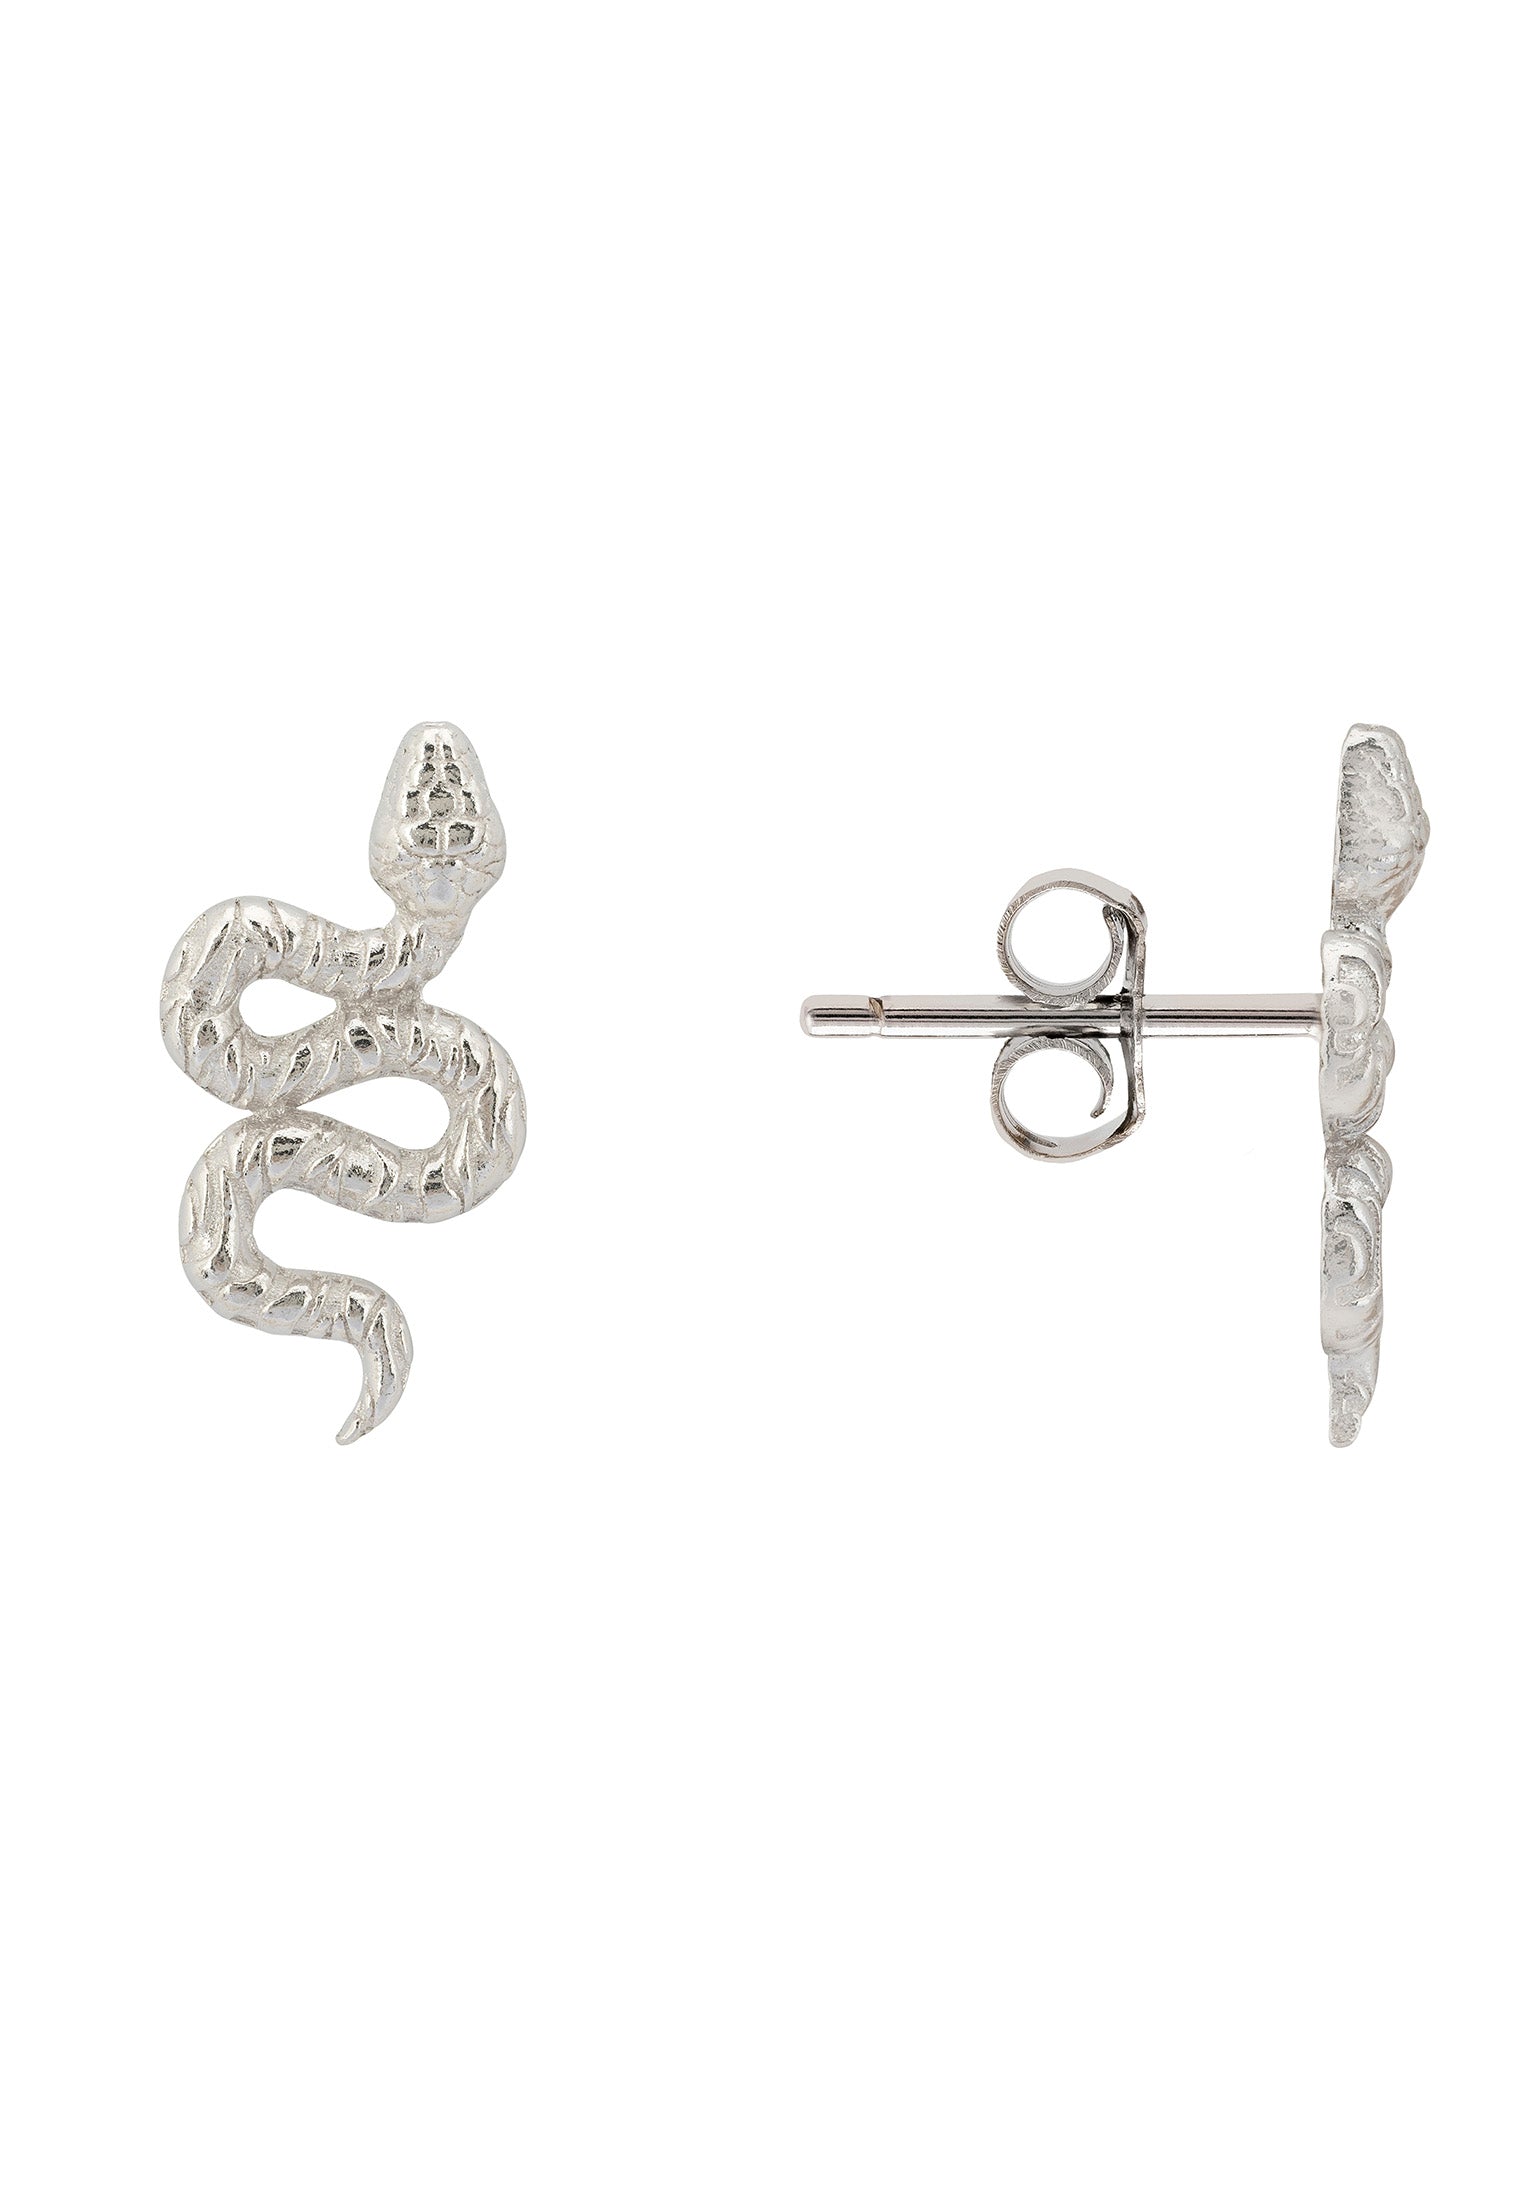 Coiled Cobra Snake Stud Earrings Silver